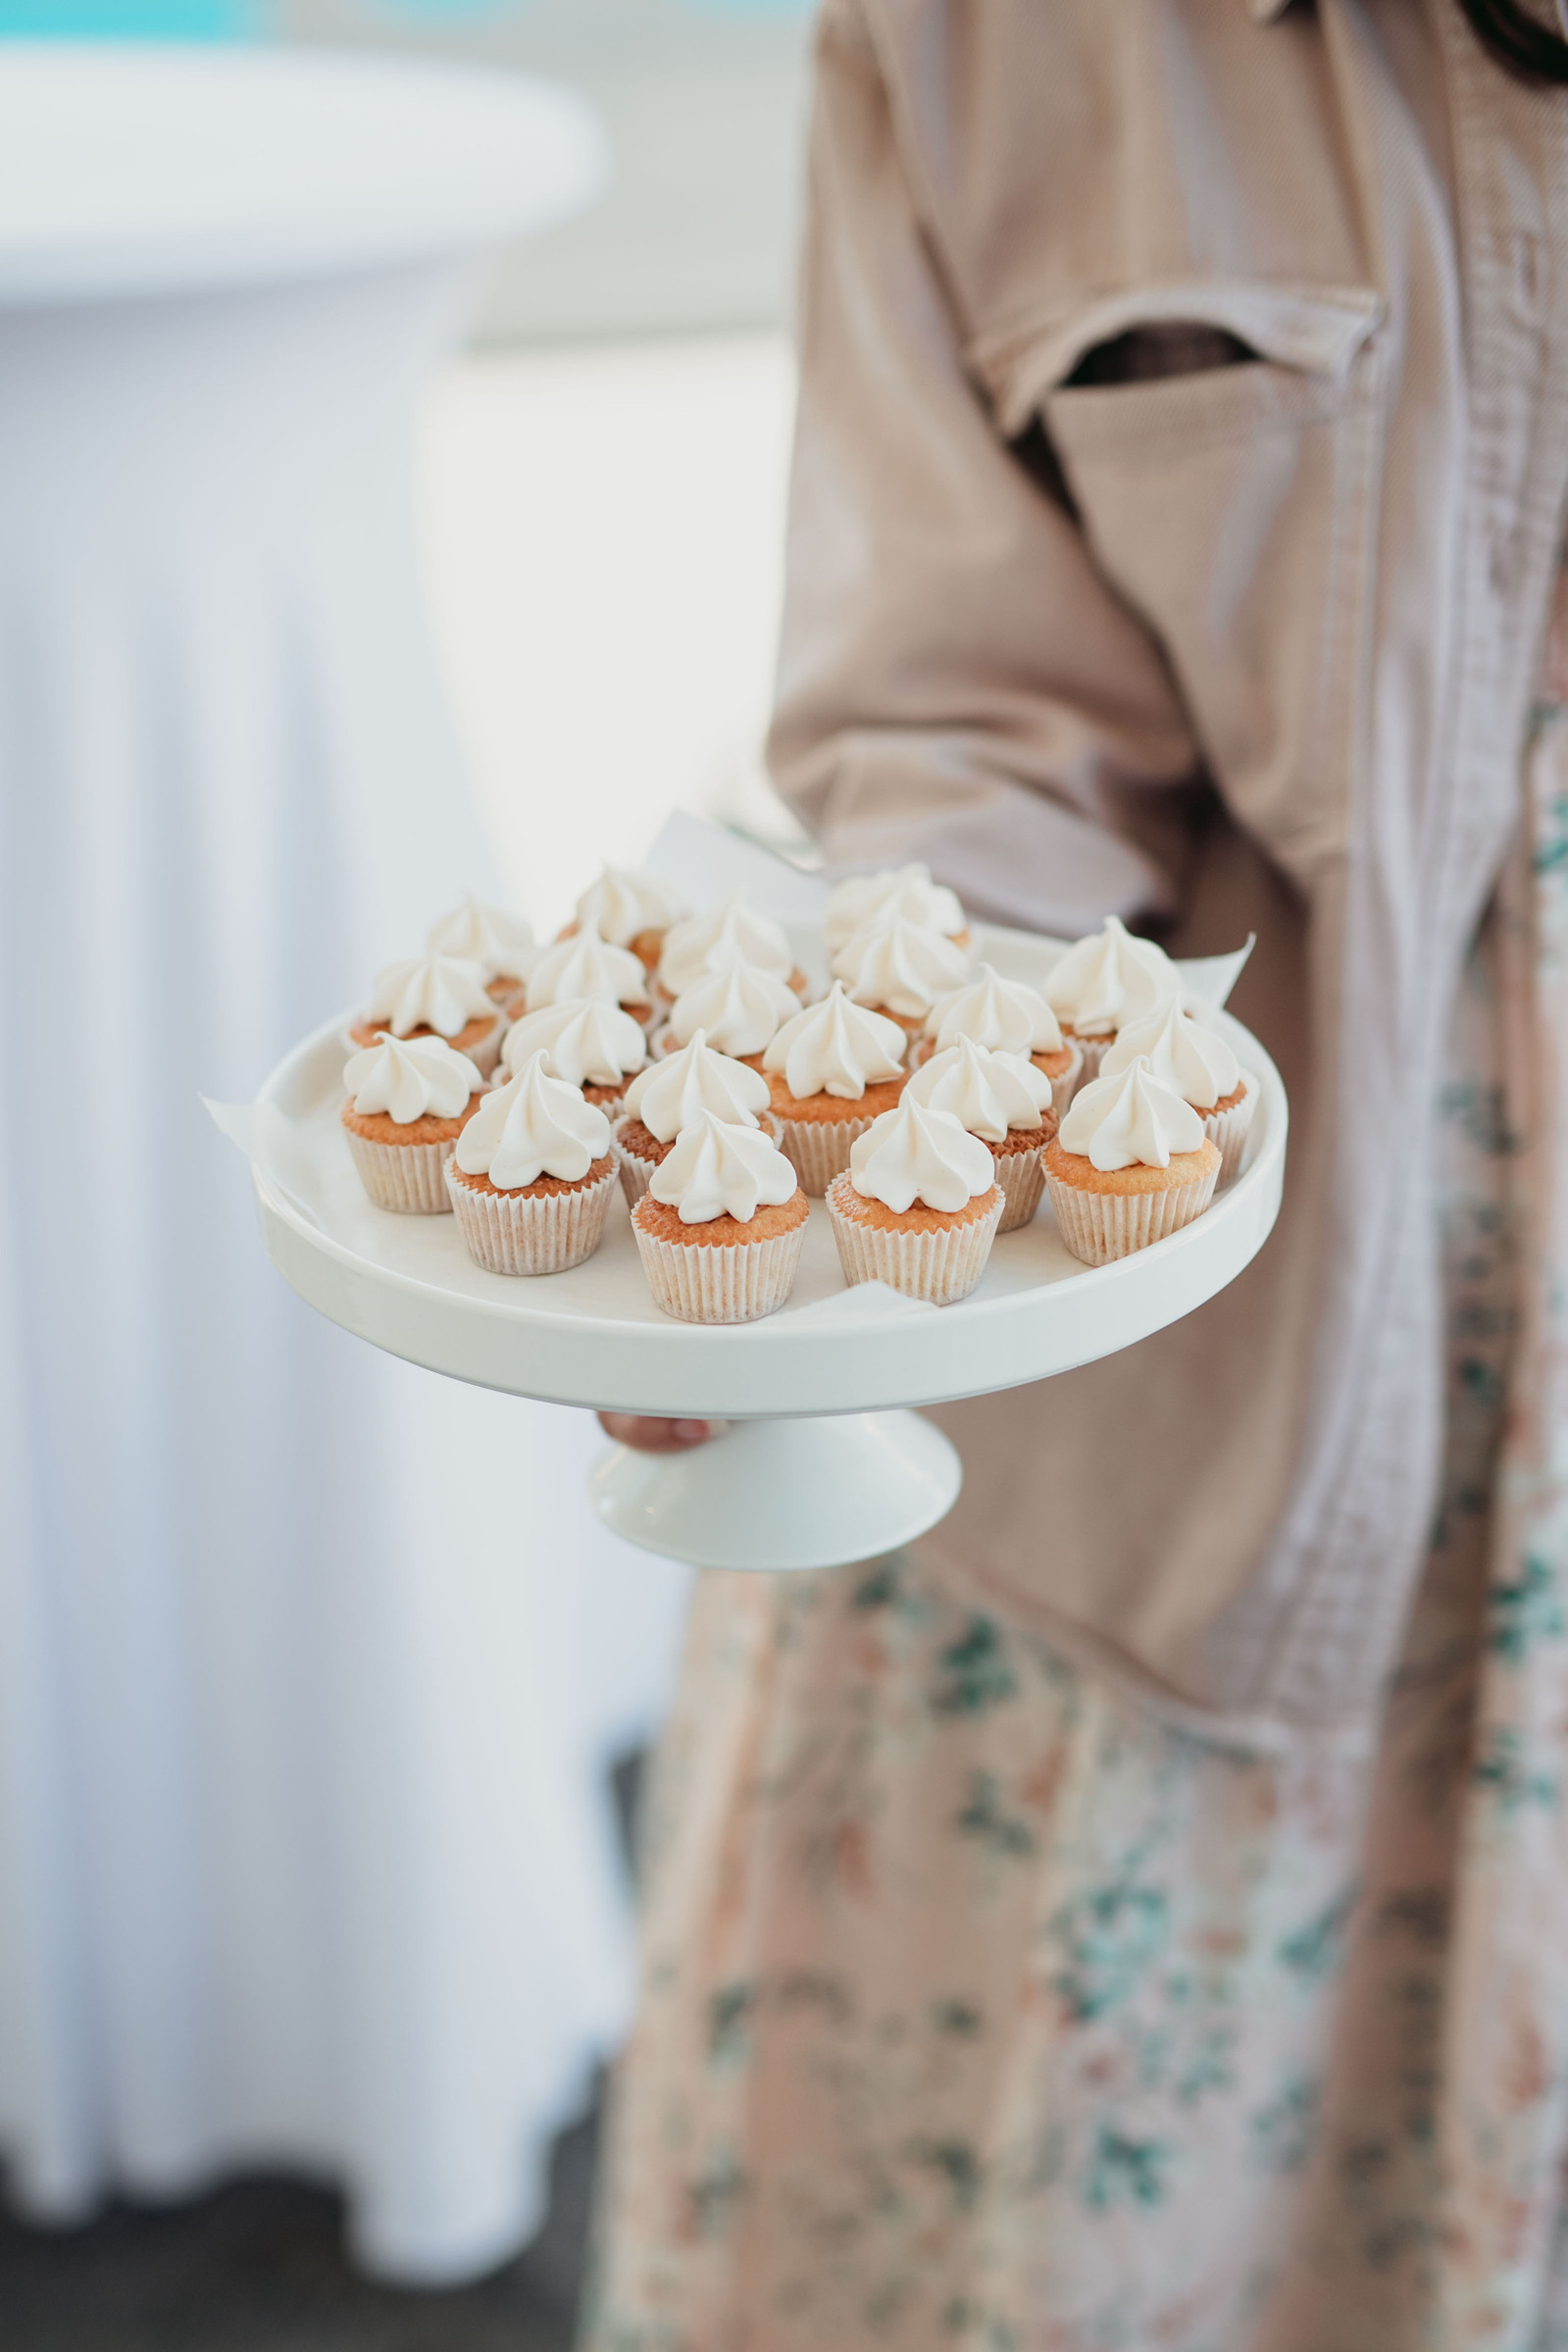 Runt vitt kakfat med fot med cupcakes med vitt topping - hålls med ena handen av kvinna med rosa jacka och blommig kjol.